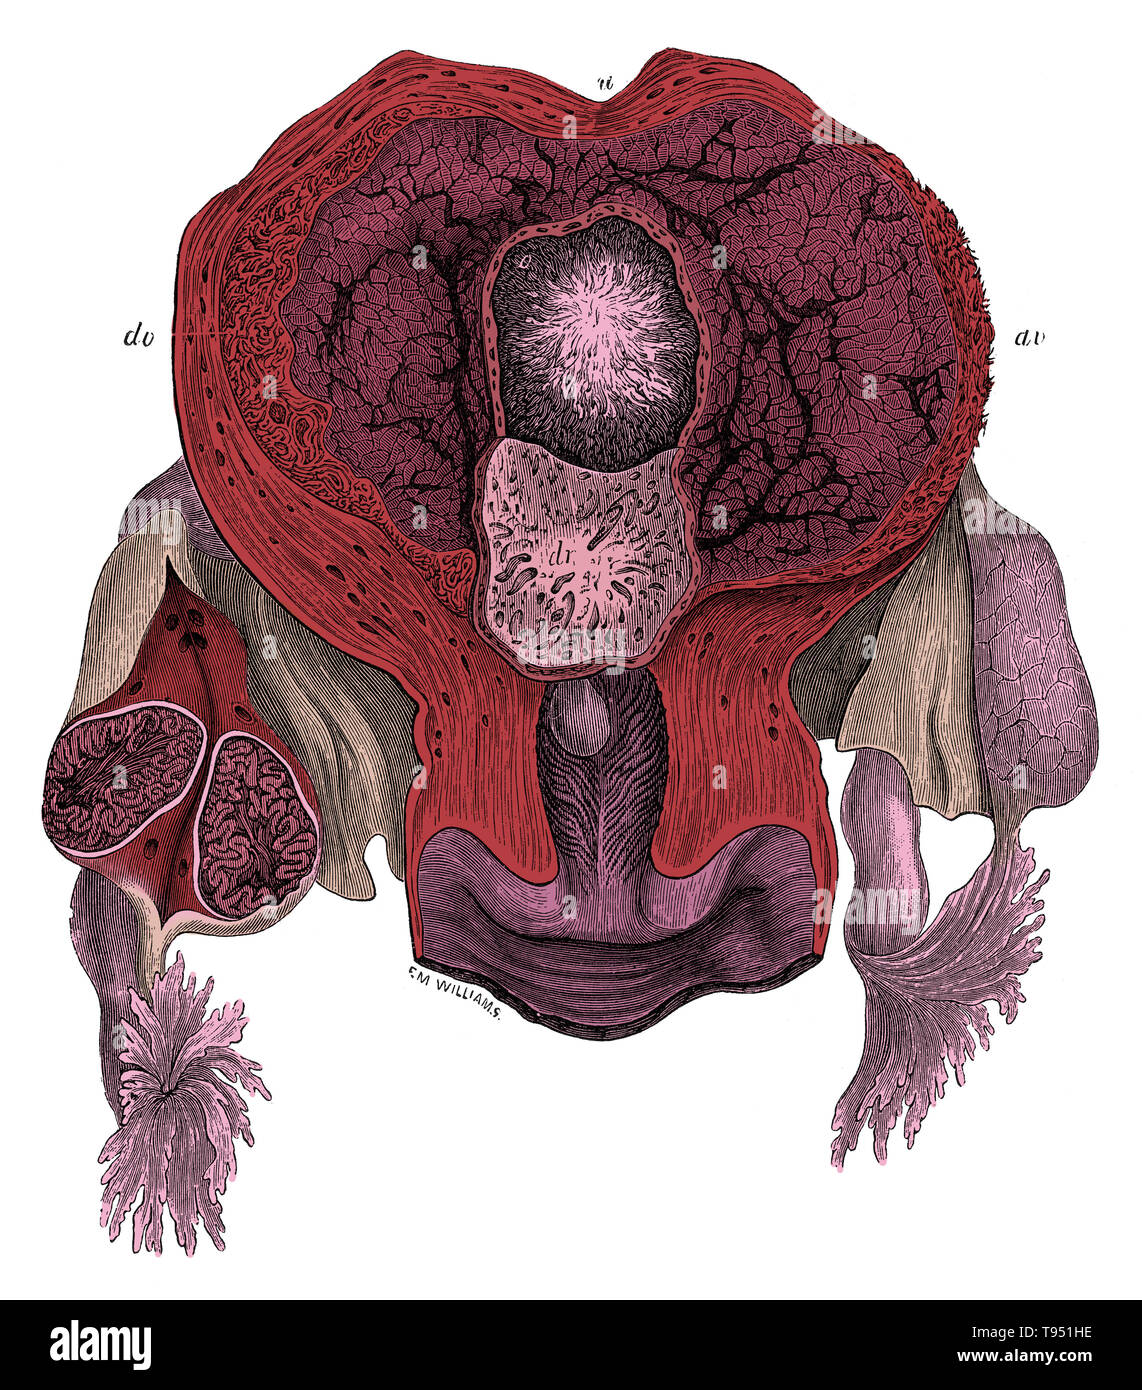 Blick in das Innere des menschlichen gravid Gebärmutter am 25. Tag. u, Gebärmutter; o, Eizelle mit Villous chorion; dv, decidua Vera; Dr, decidua reflexa, um die Marge der Eizelle geteilt, und lehnte damit die narbige Oberfläche, die von der Eizelle entfernt wurde. Die rechten Eierstock ist gespalten, und zeigt im Abschnitt plicated Zustand der frühen Corpus luteum. Jones Quain (November 1796 bis 31. Januar 1865) war ein irischer Anatom, Professor für Anatomie und Physiologie an der Universität von London, und Autor von Elementen der Anatomie. Dieses Bild hat eingefärbt worden. Stockfoto